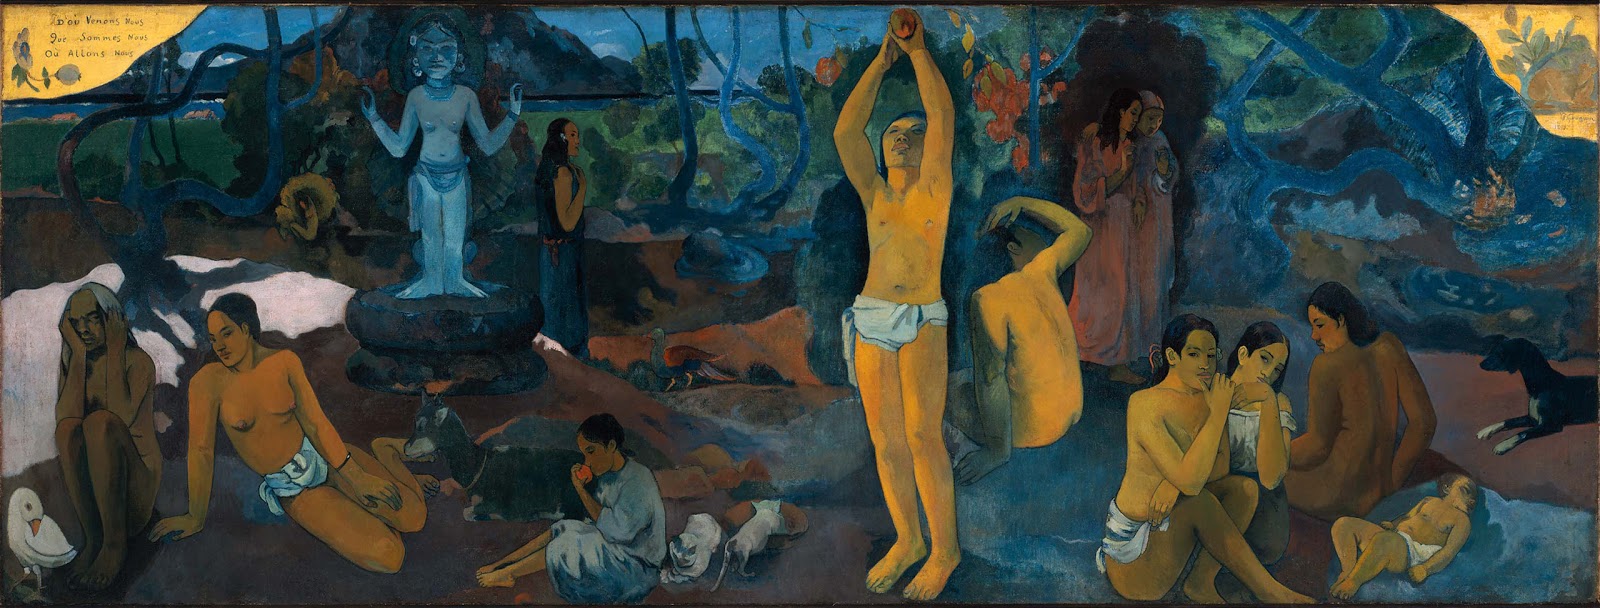 Paul+Gauguin-1848-1903 (413).jpg